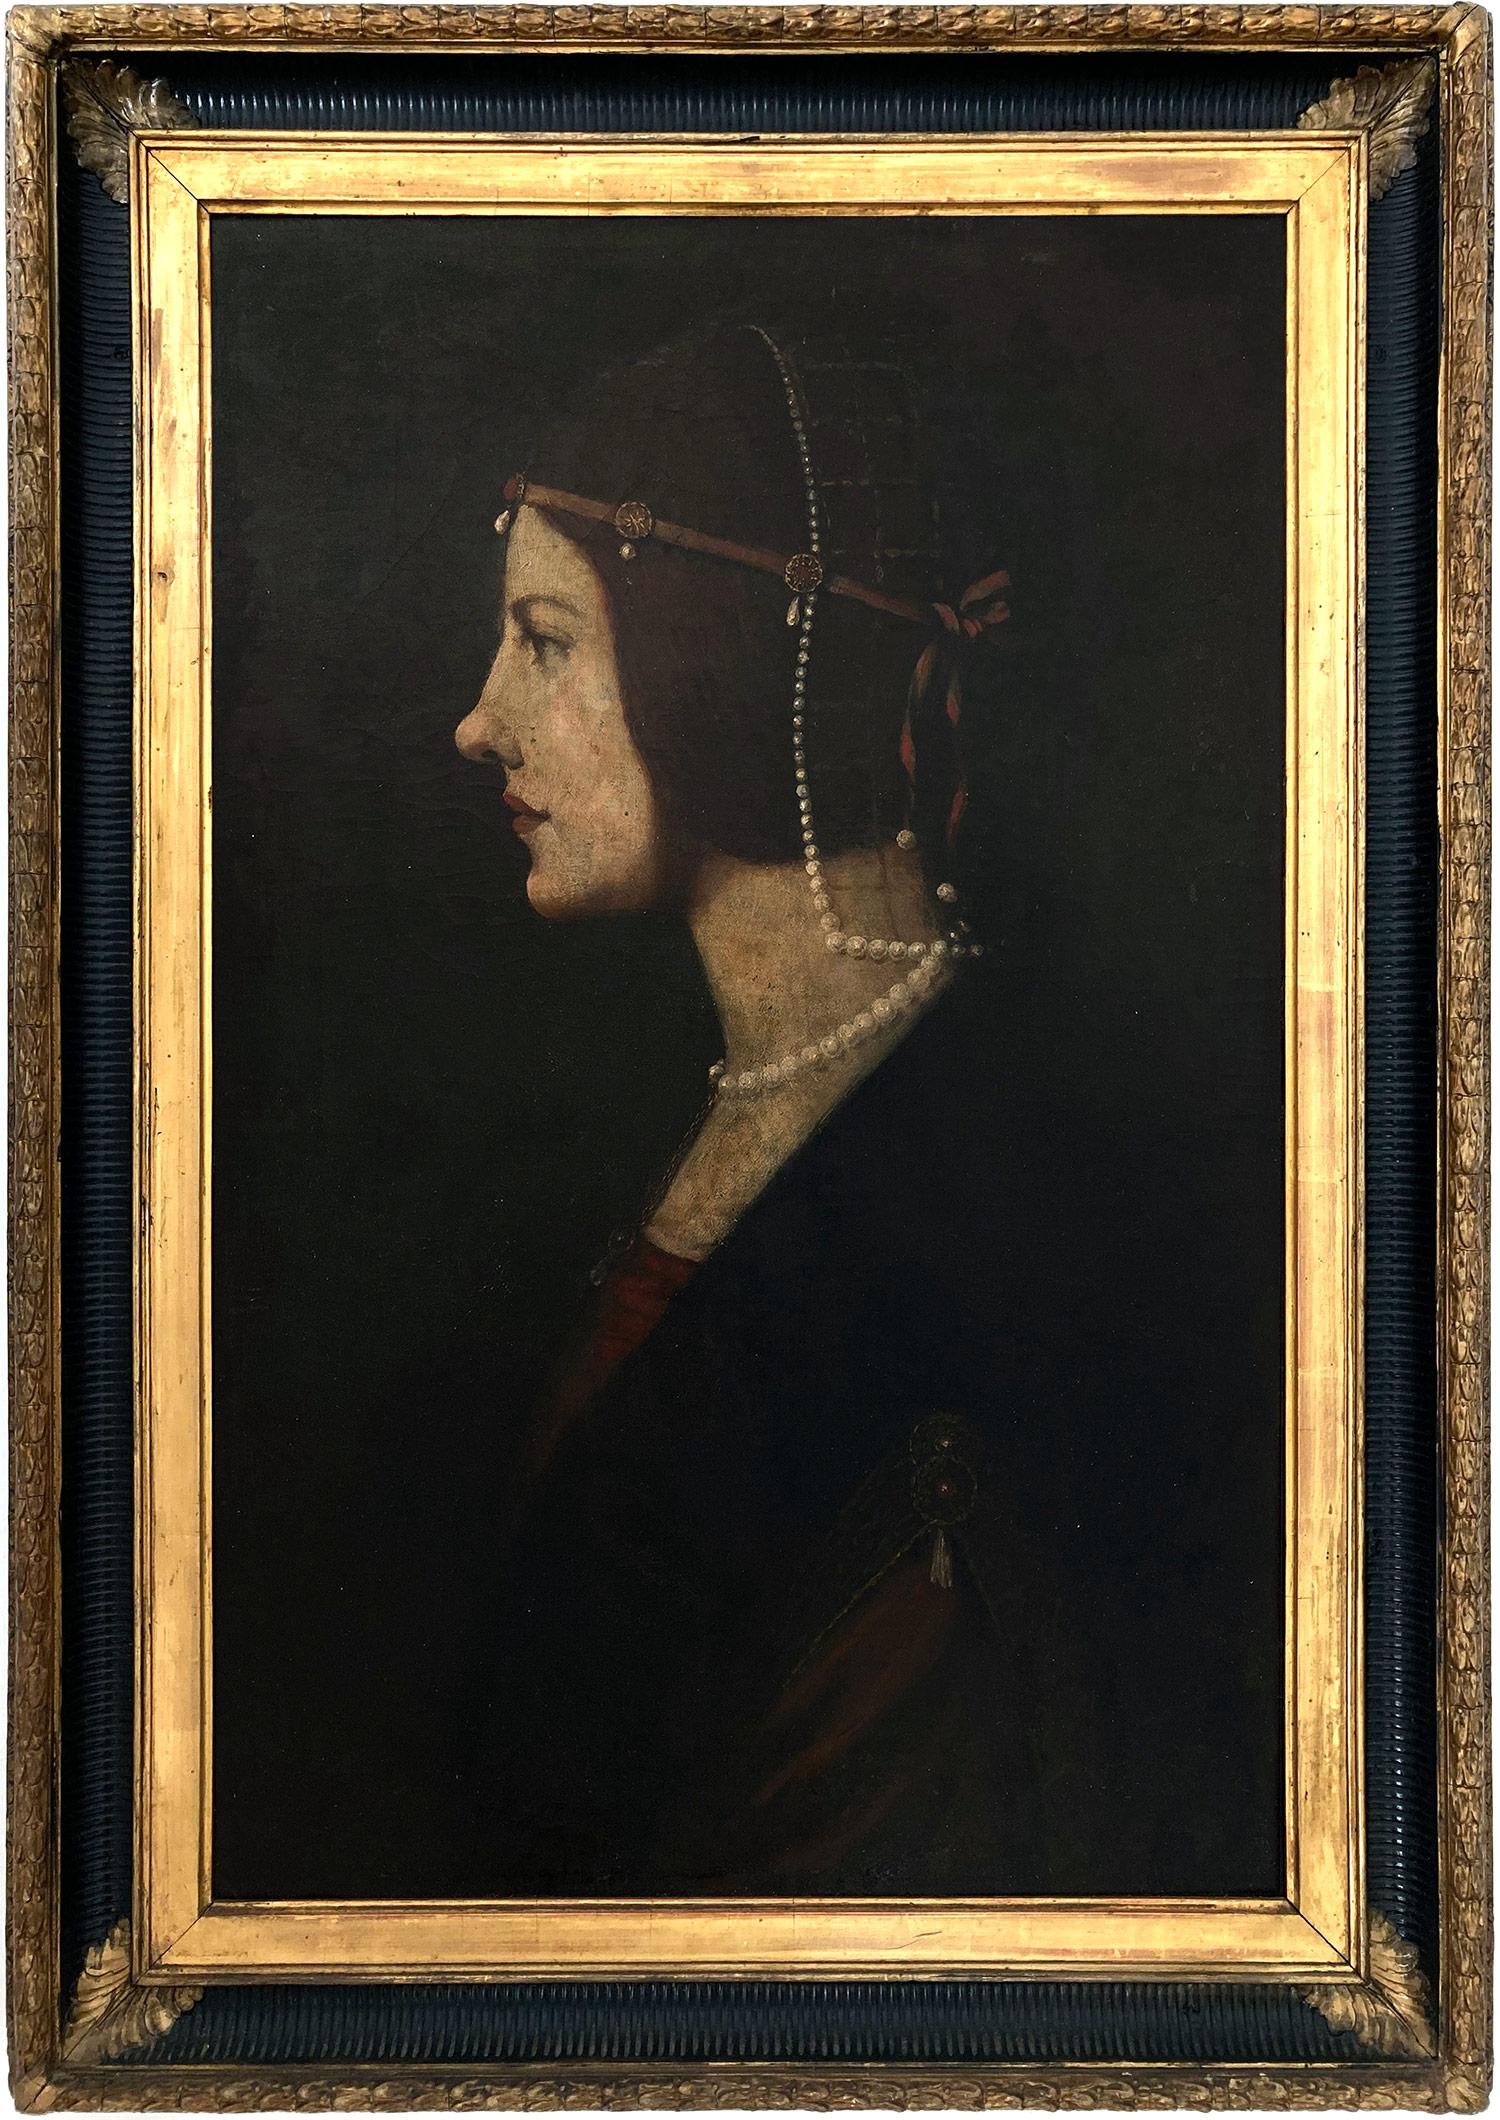 Copie du "Portrait de Béatrice dʼEste" par Leonardo da Vinci créé au 15e siècle